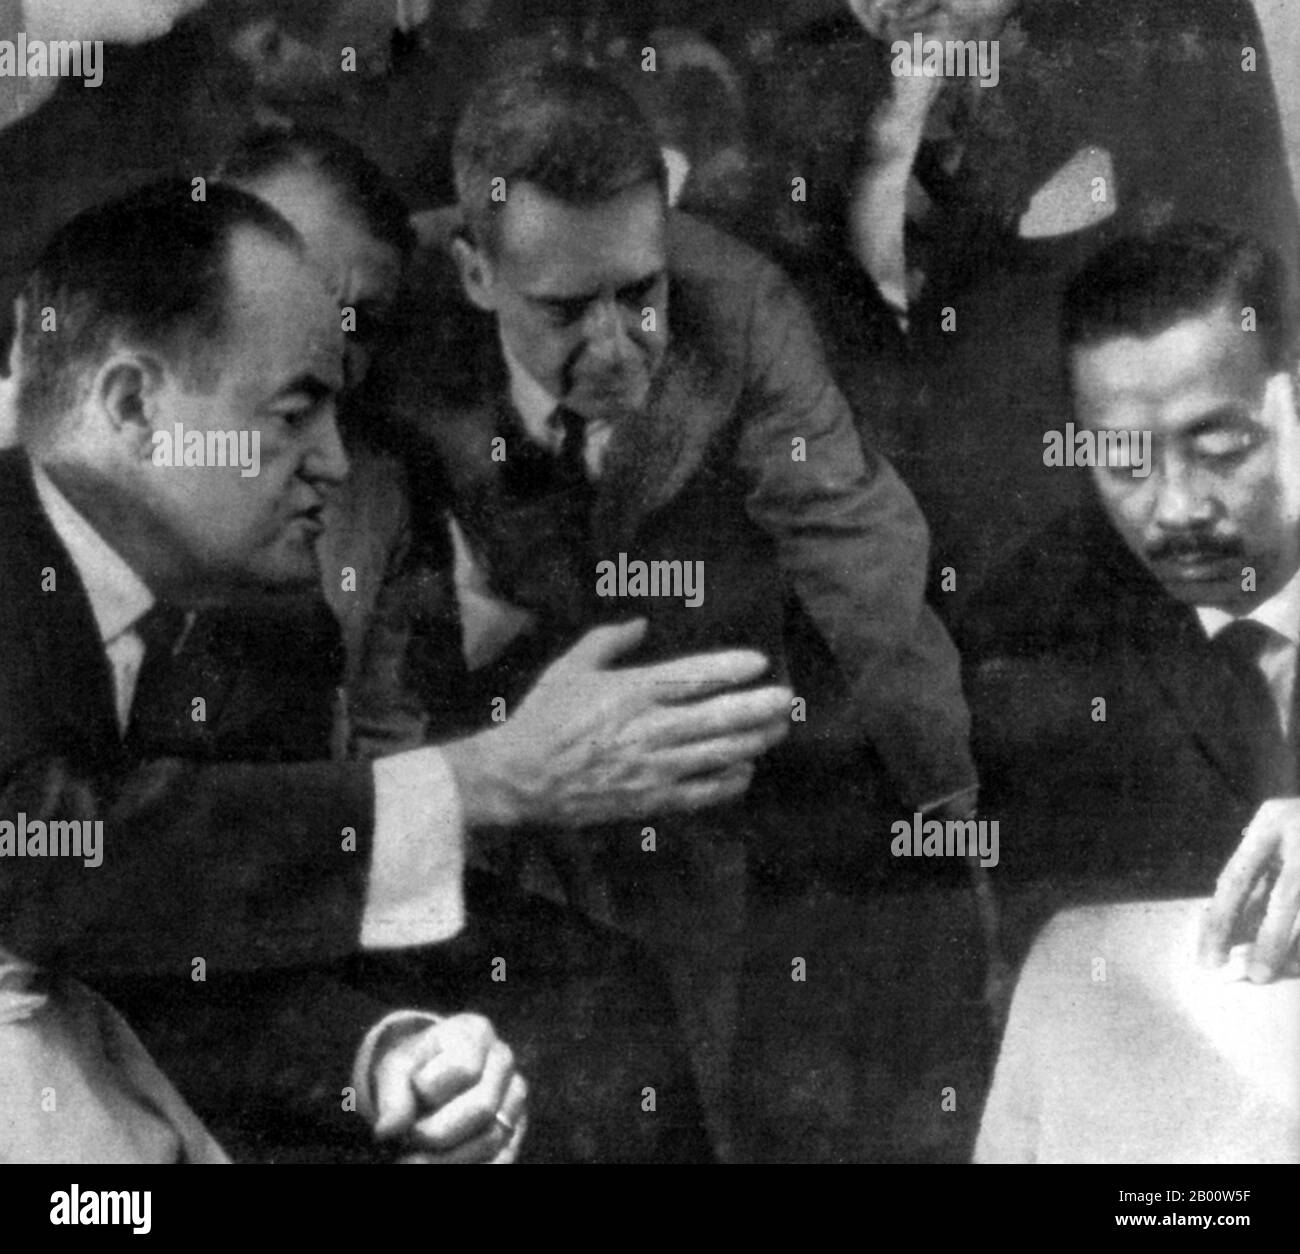 Vietnam : une photo rare d'Edward G. Lansdale (au centre) entre le vice-président américain Hubert Humphrey (à gauche) et le vice-maréchal de l'air Ky. Edward Geary Lansdale (du 6 février 1908 au 23 février 1987) était un officier de la Force aérienne des États-Unis qui a servi au Bureau des services stratégiques et à la Central Intelligence Agency. Lansdale a été membre de la mission du général John W. O'daniel en Indo-Chine en 1953, en tant que conseiller pour les opérations spéciales de contre-guérilla des forces françaises contre le Viet Minh. De 1954 à 1957, il a été stationné à Saigon comme conseiller américain auprès du gouvernement sud-vietnamien. Banque D'Images